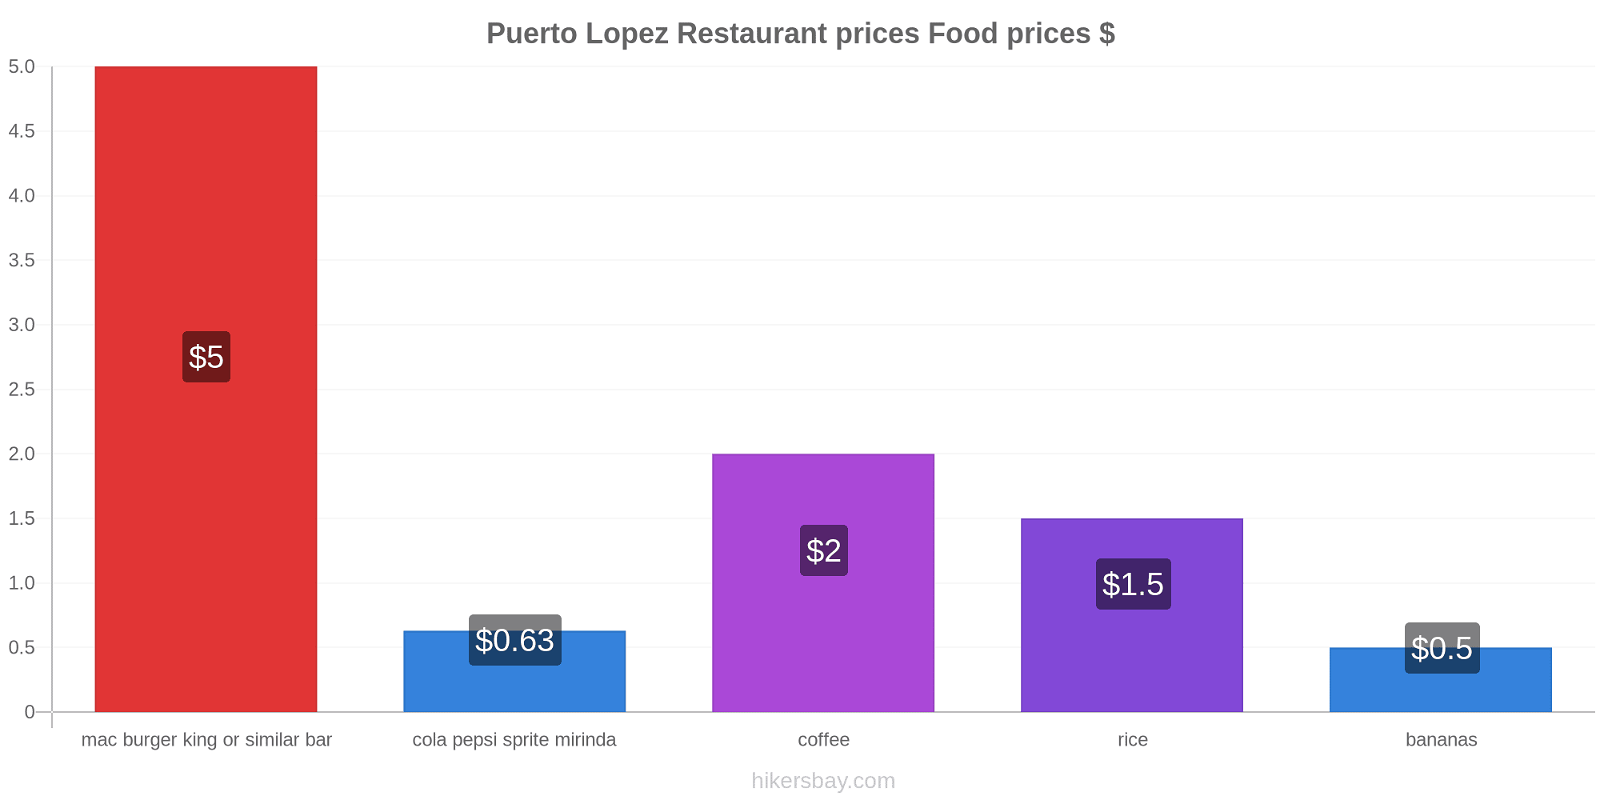 Puerto Lopez price changes hikersbay.com